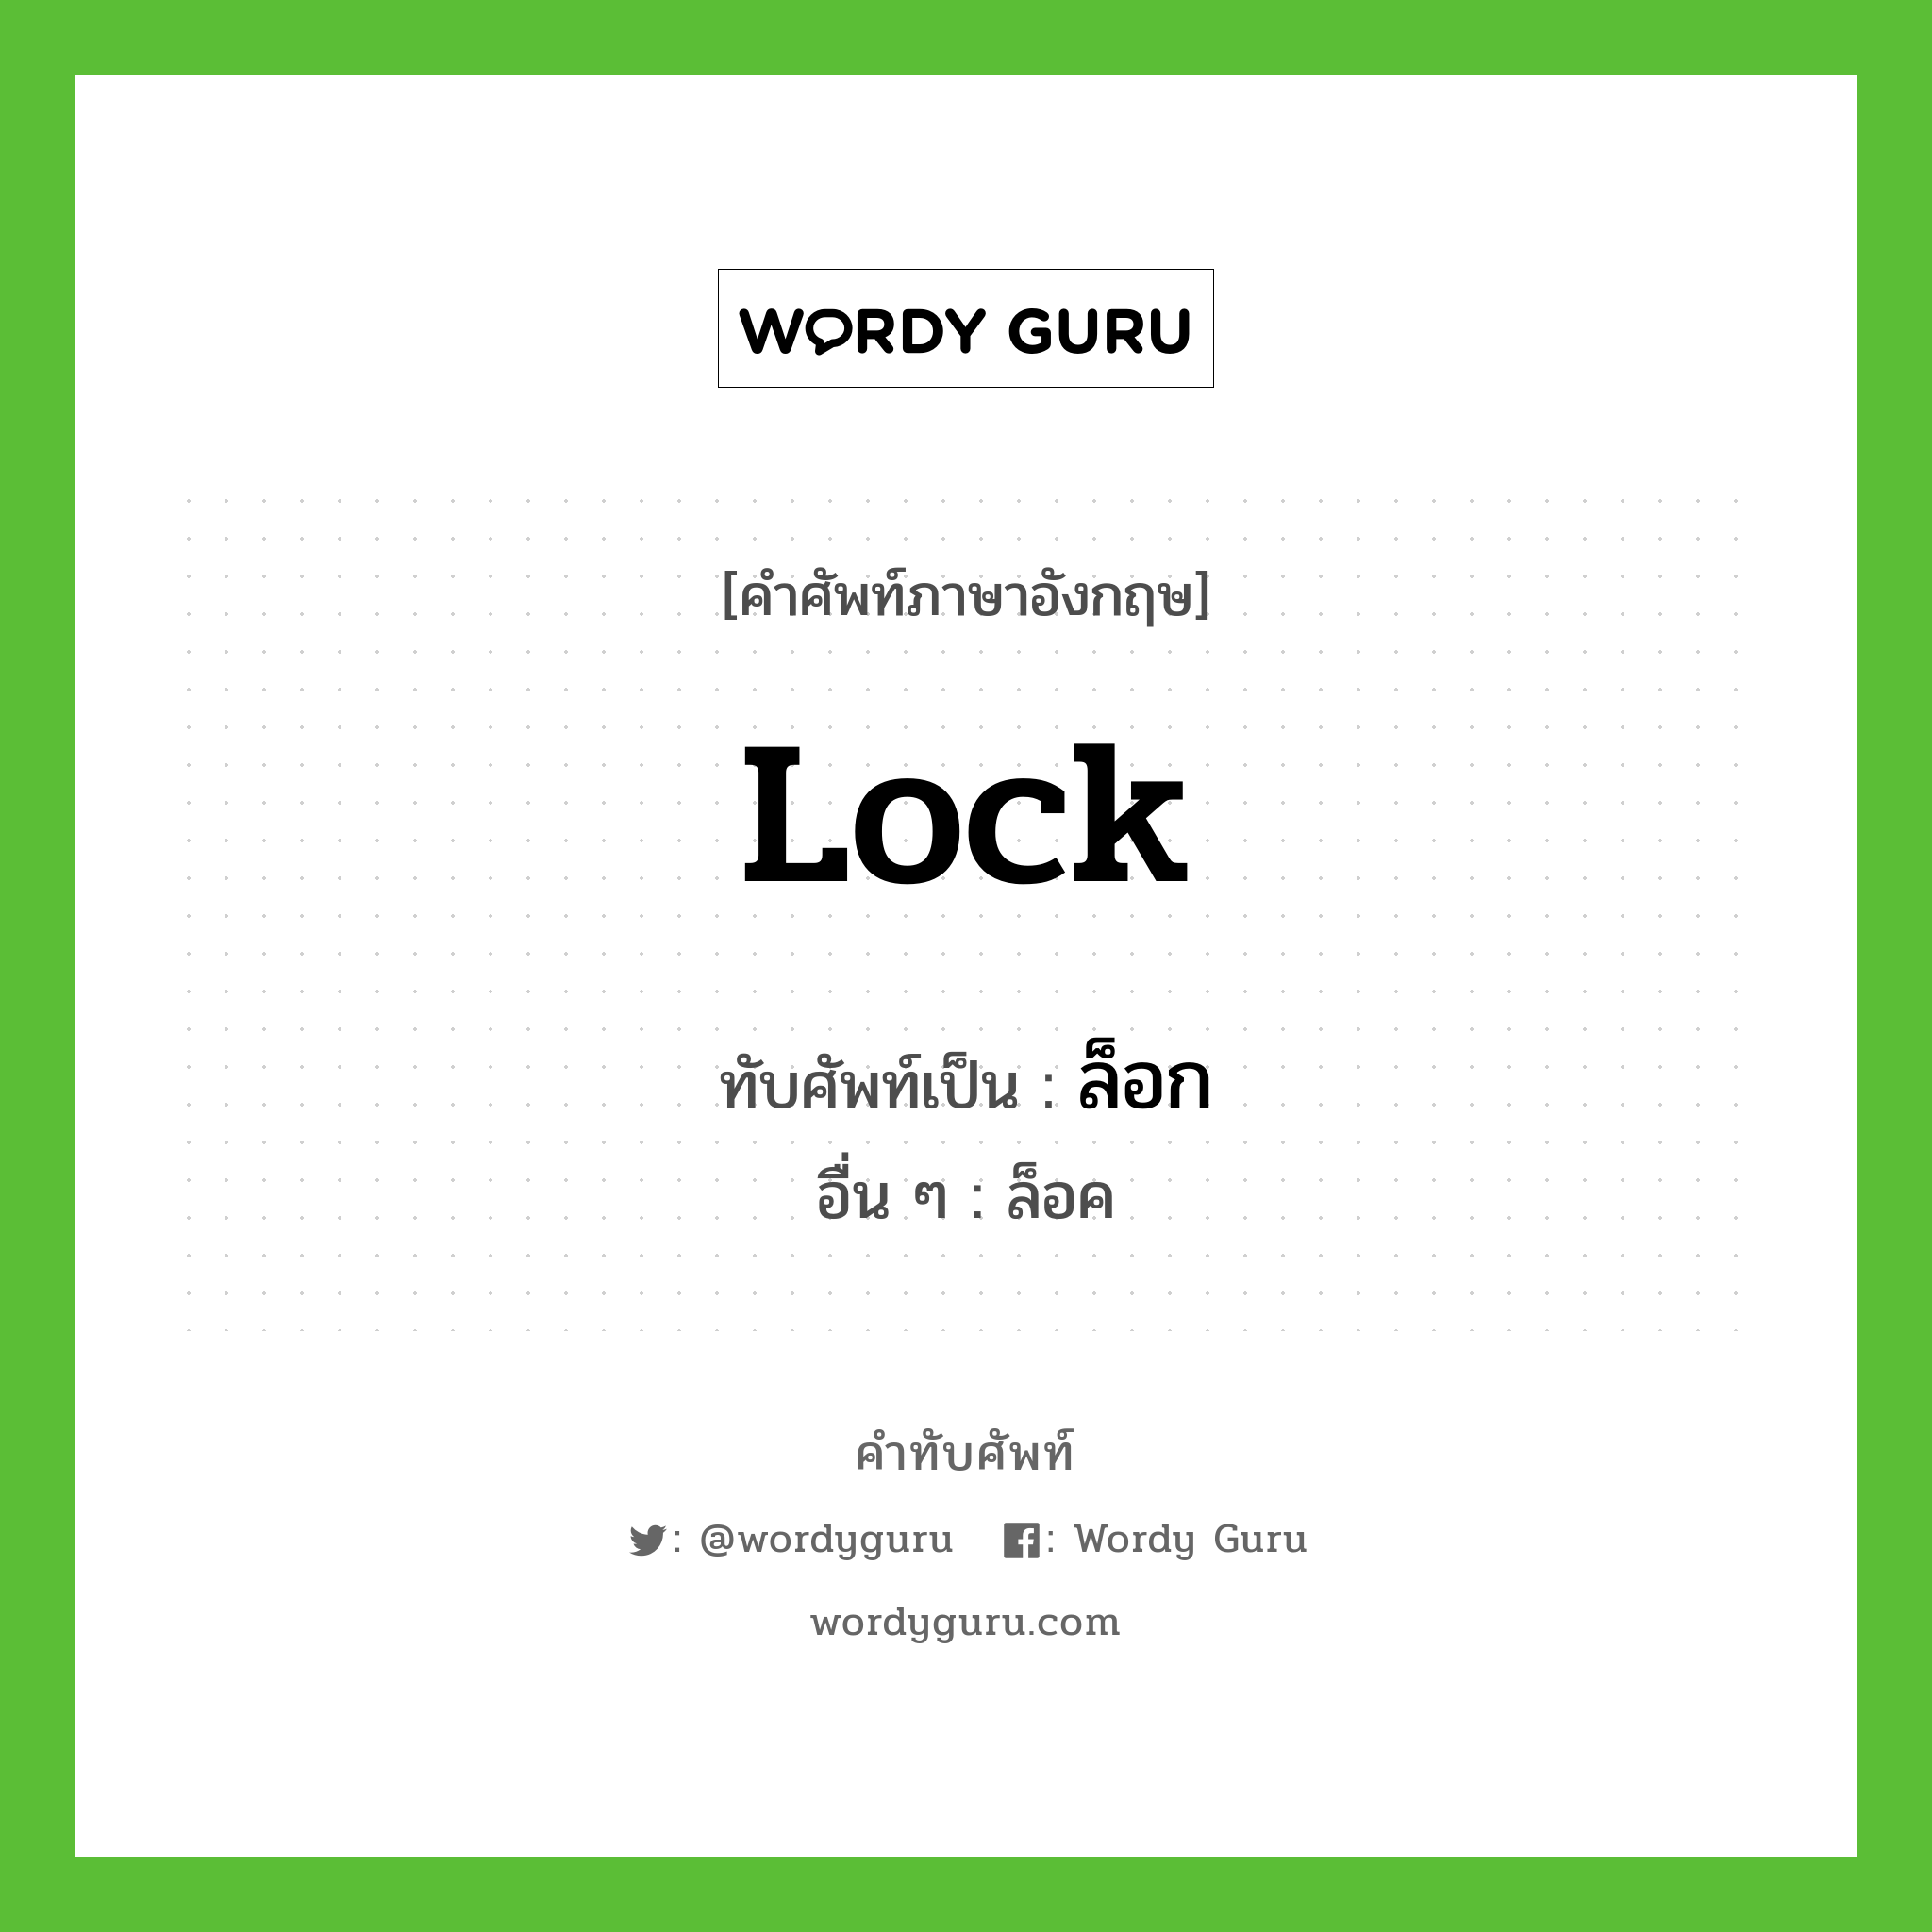 lock เขียนเป็นคำไทยว่าอะไร?, คำศัพท์ภาษาอังกฤษ lock ทับศัพท์เป็น ล็อก อื่น ๆ ล็อค